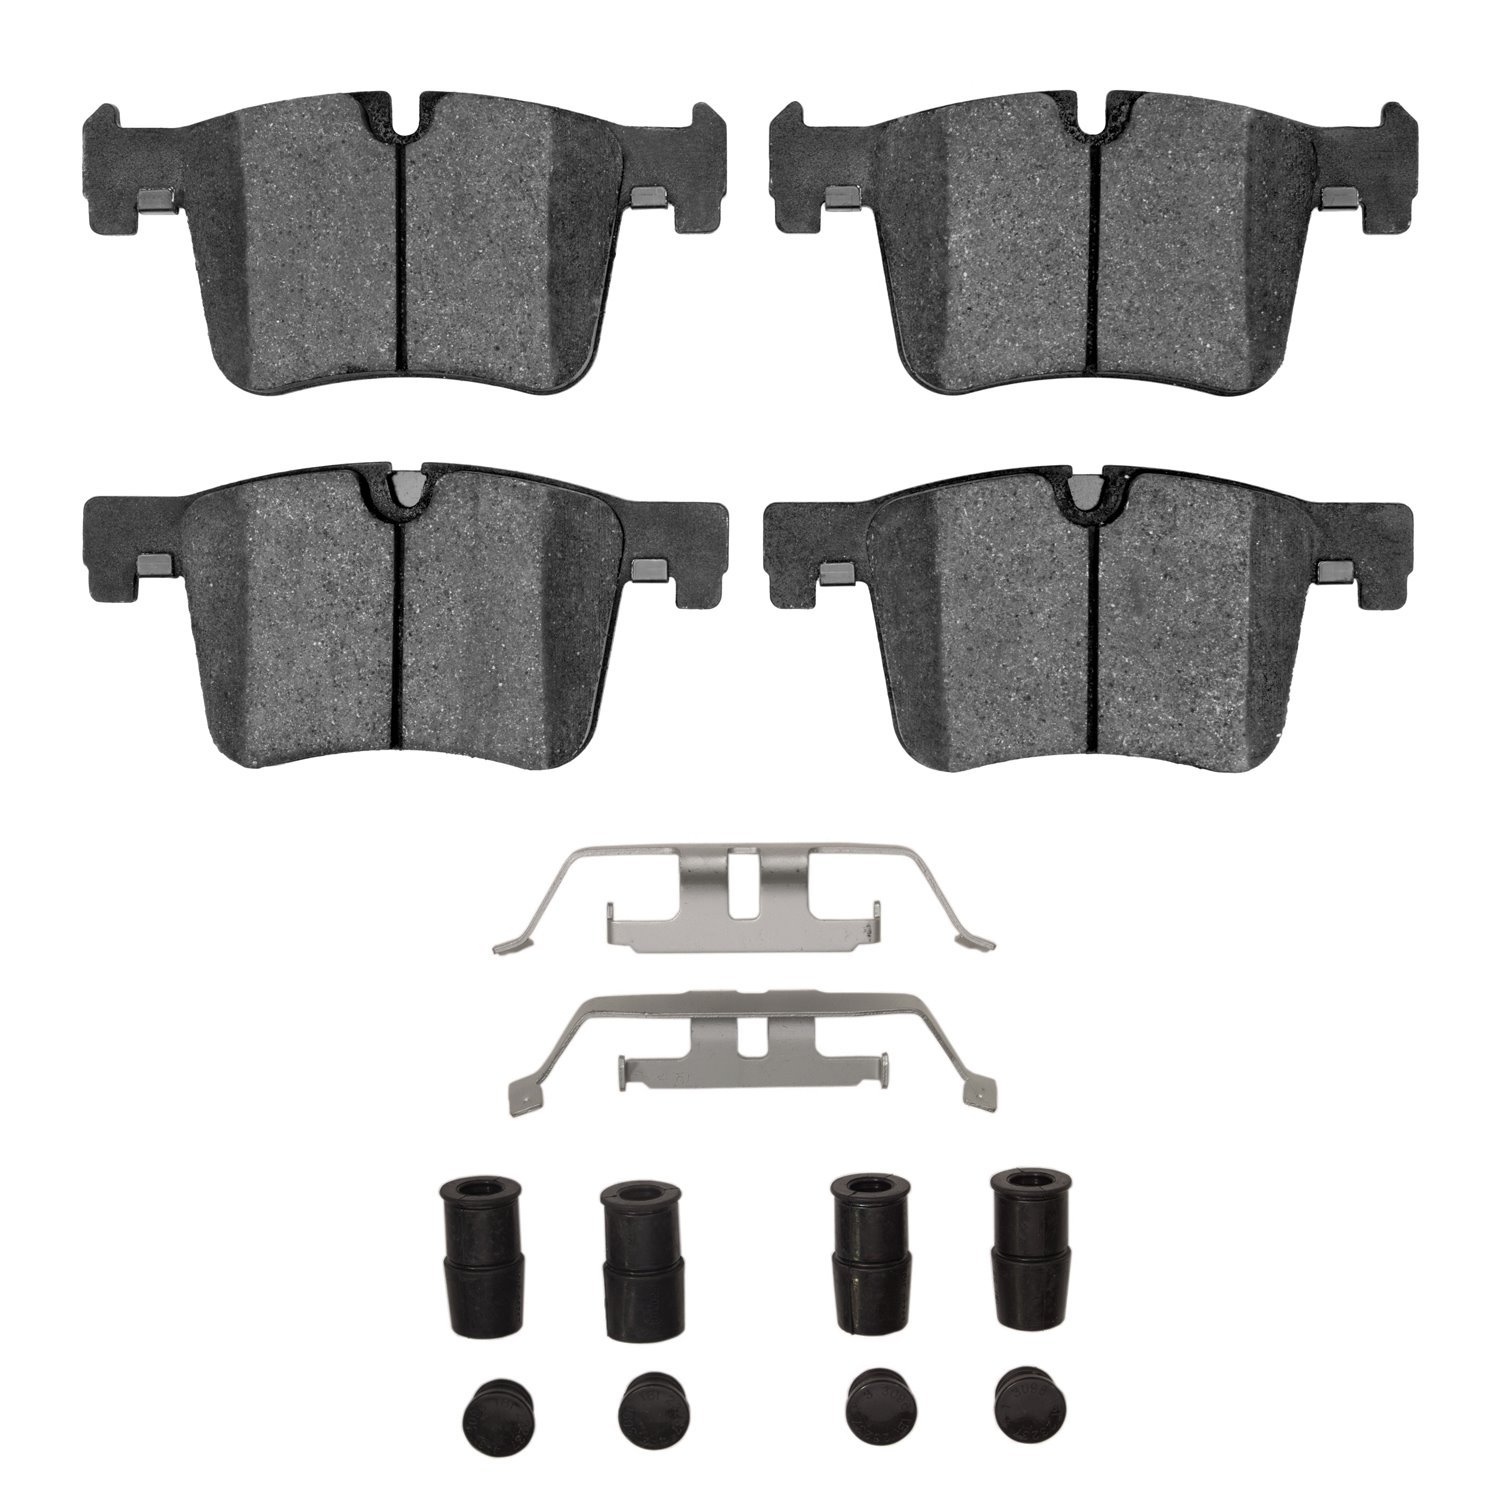 1310-1561-01 3000-Series Ceramic Brake Pads & Hardware Kit, 2011-2021 BMW, Position: Front